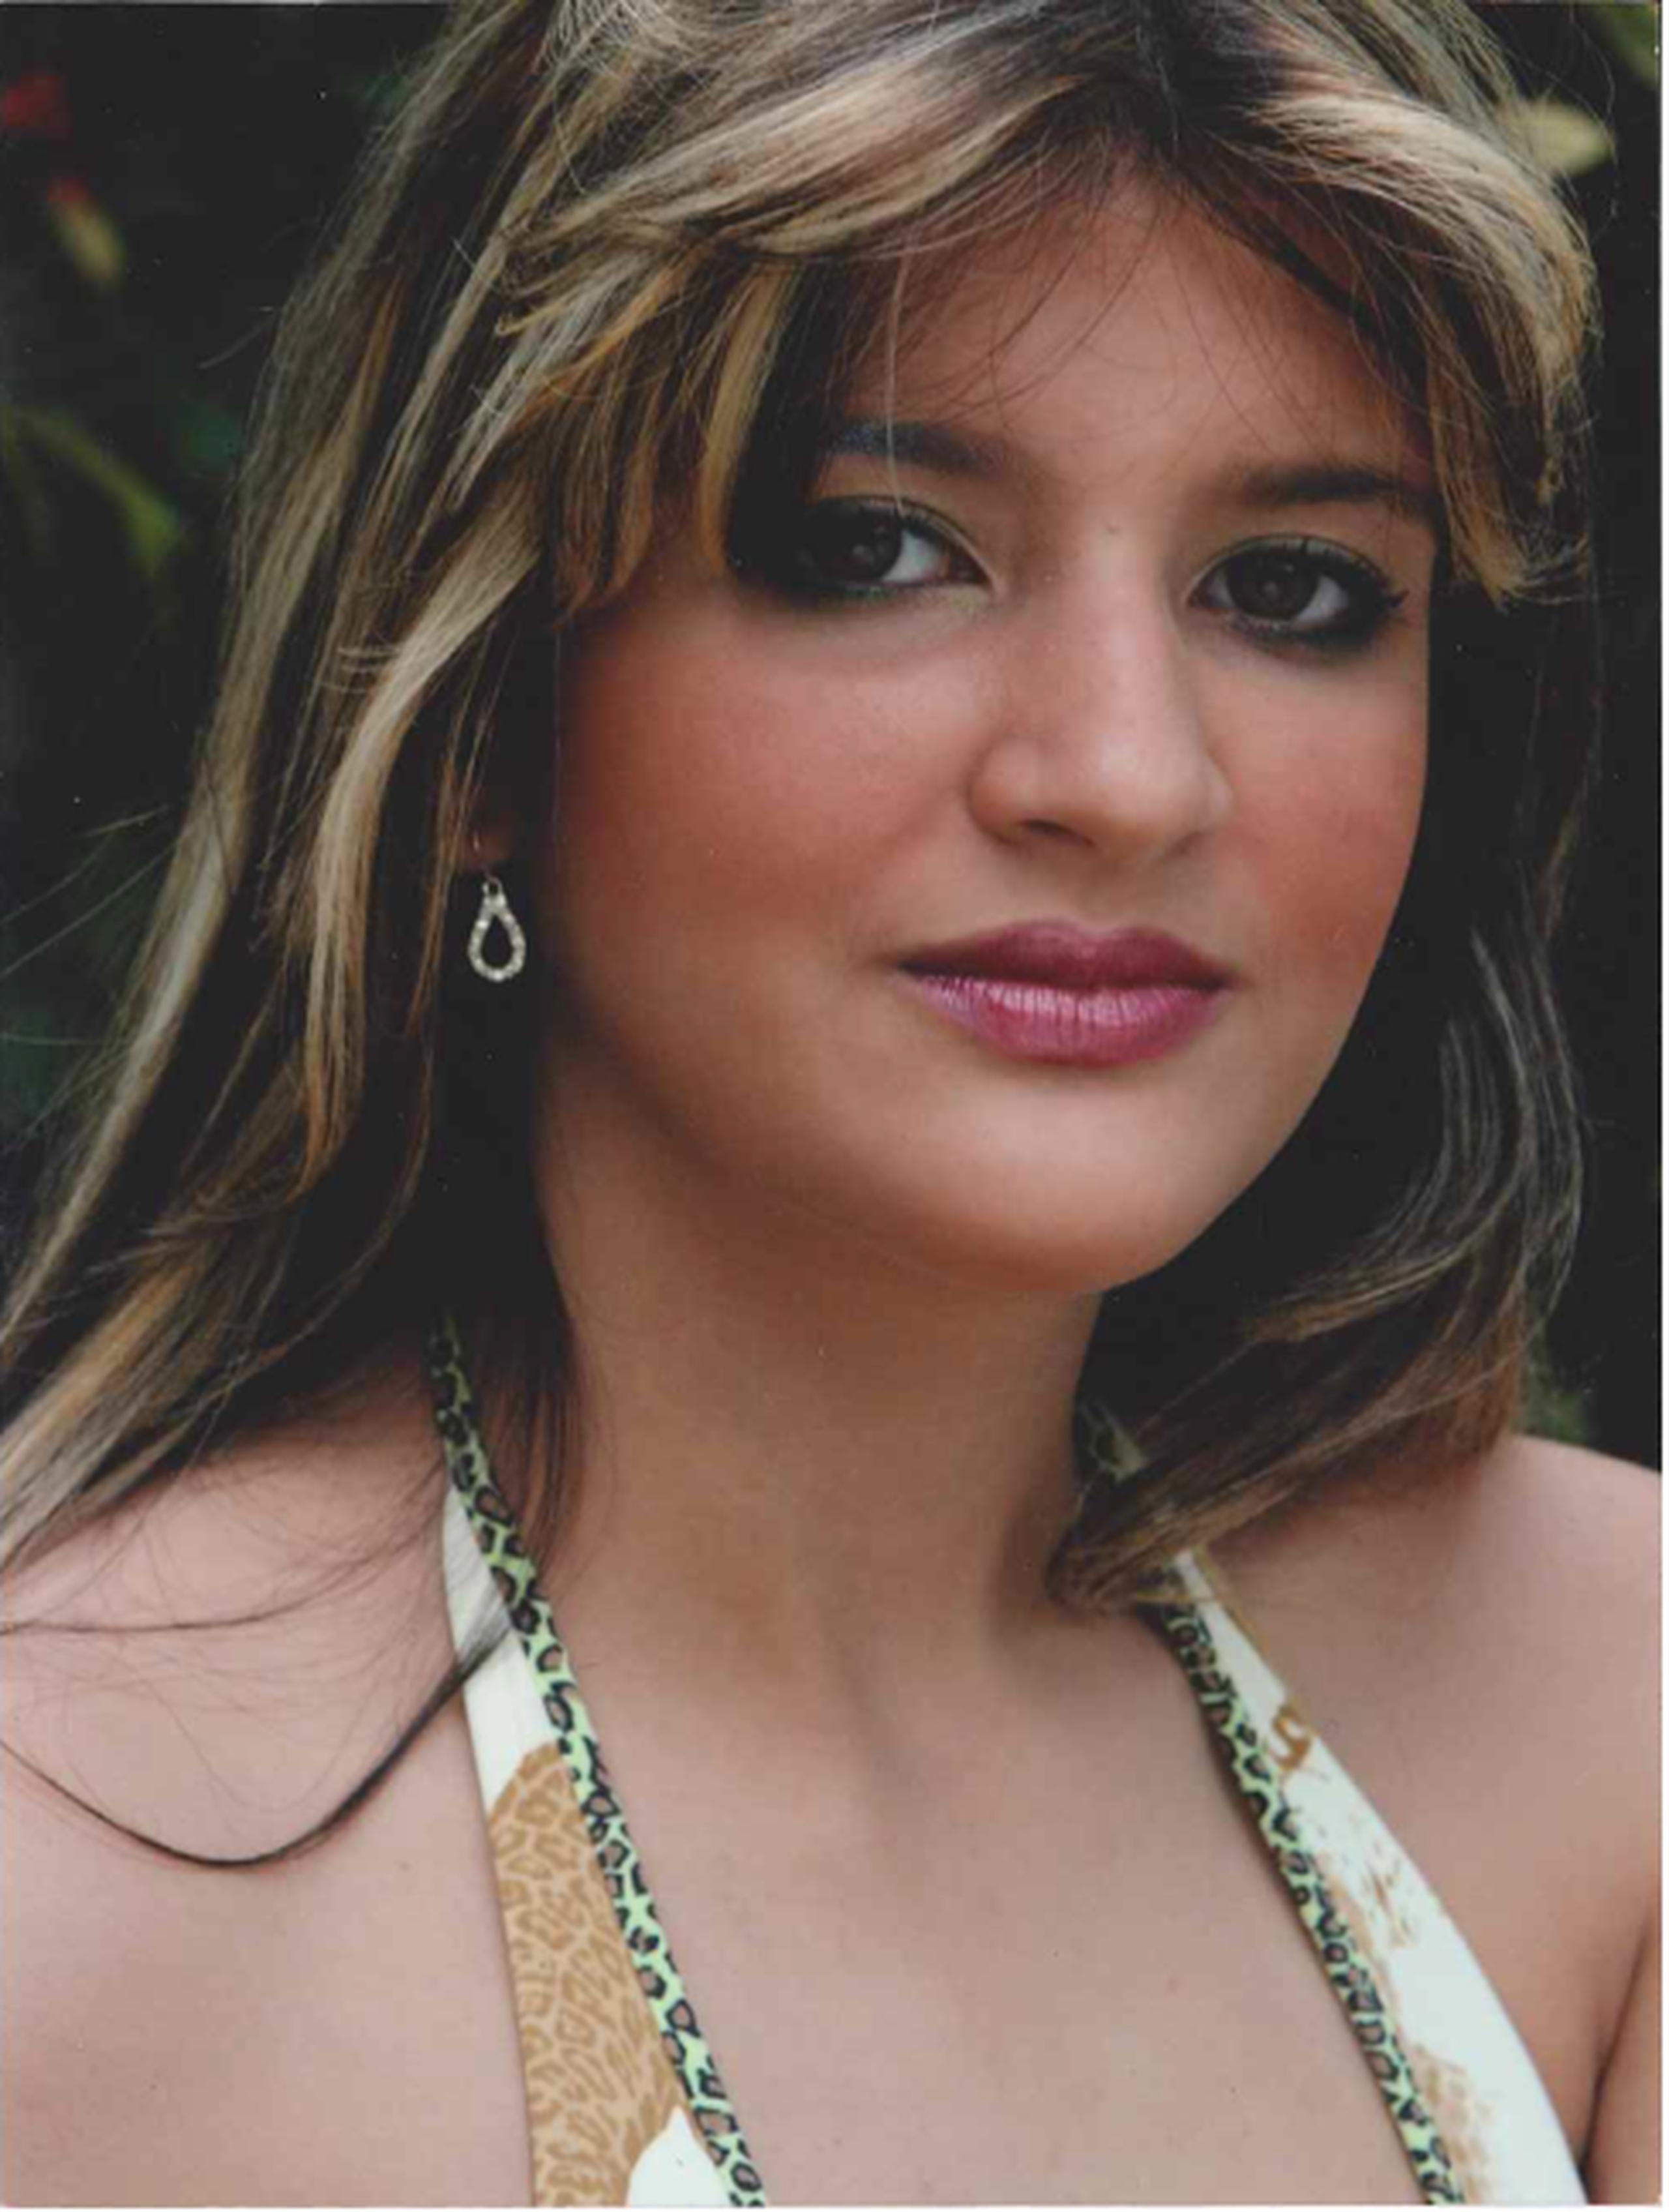 Damaris Vilá Arroyo de 29 años, fue vista por última vez el 11 de febrero, cuando salió de la residencia de su padre localizada en la calle Soler de la urbanización Constancia, en Ponce. (Suministrada)